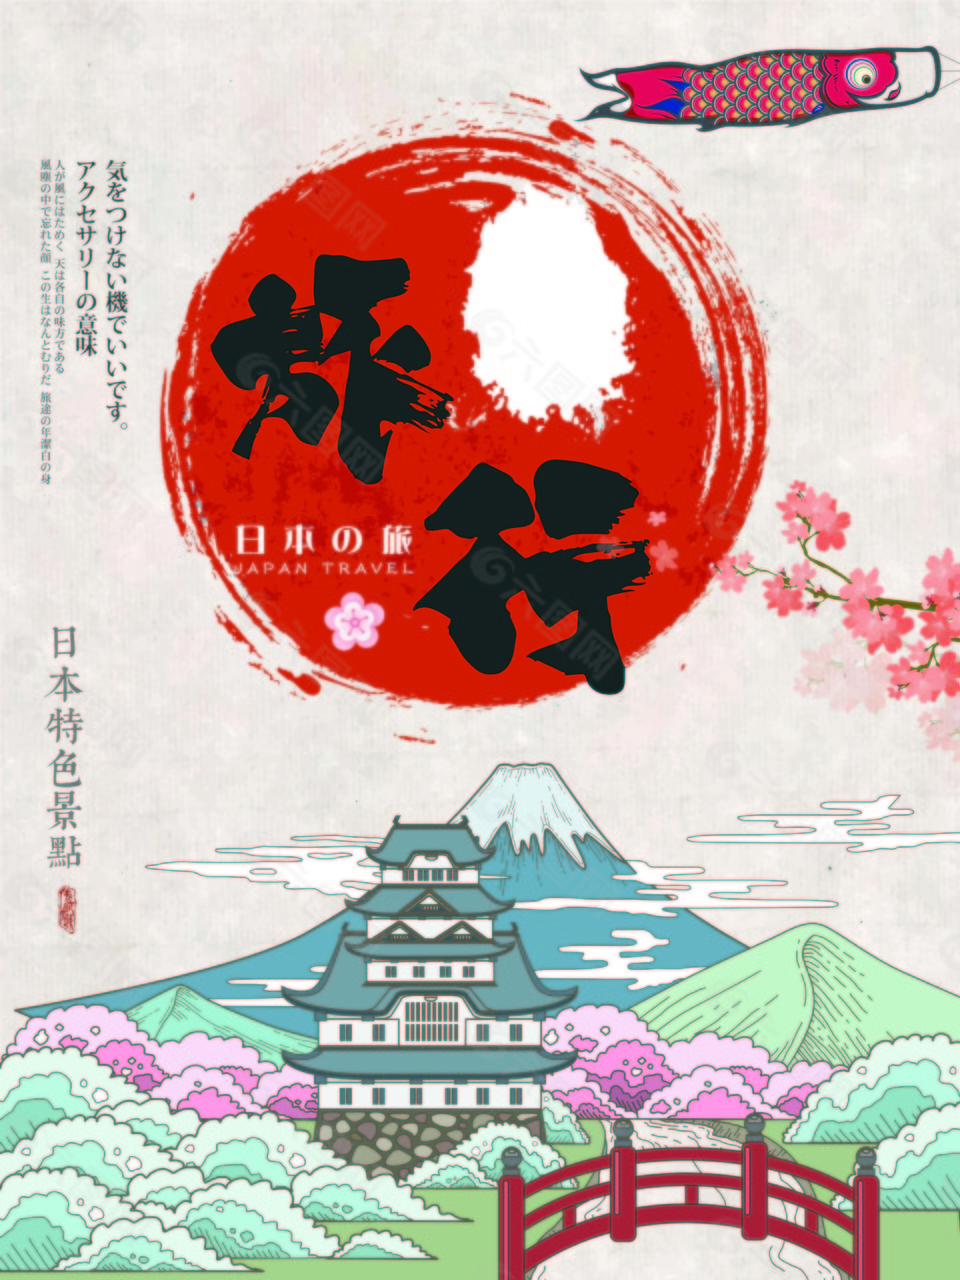 唯美艺术日本旅行海报